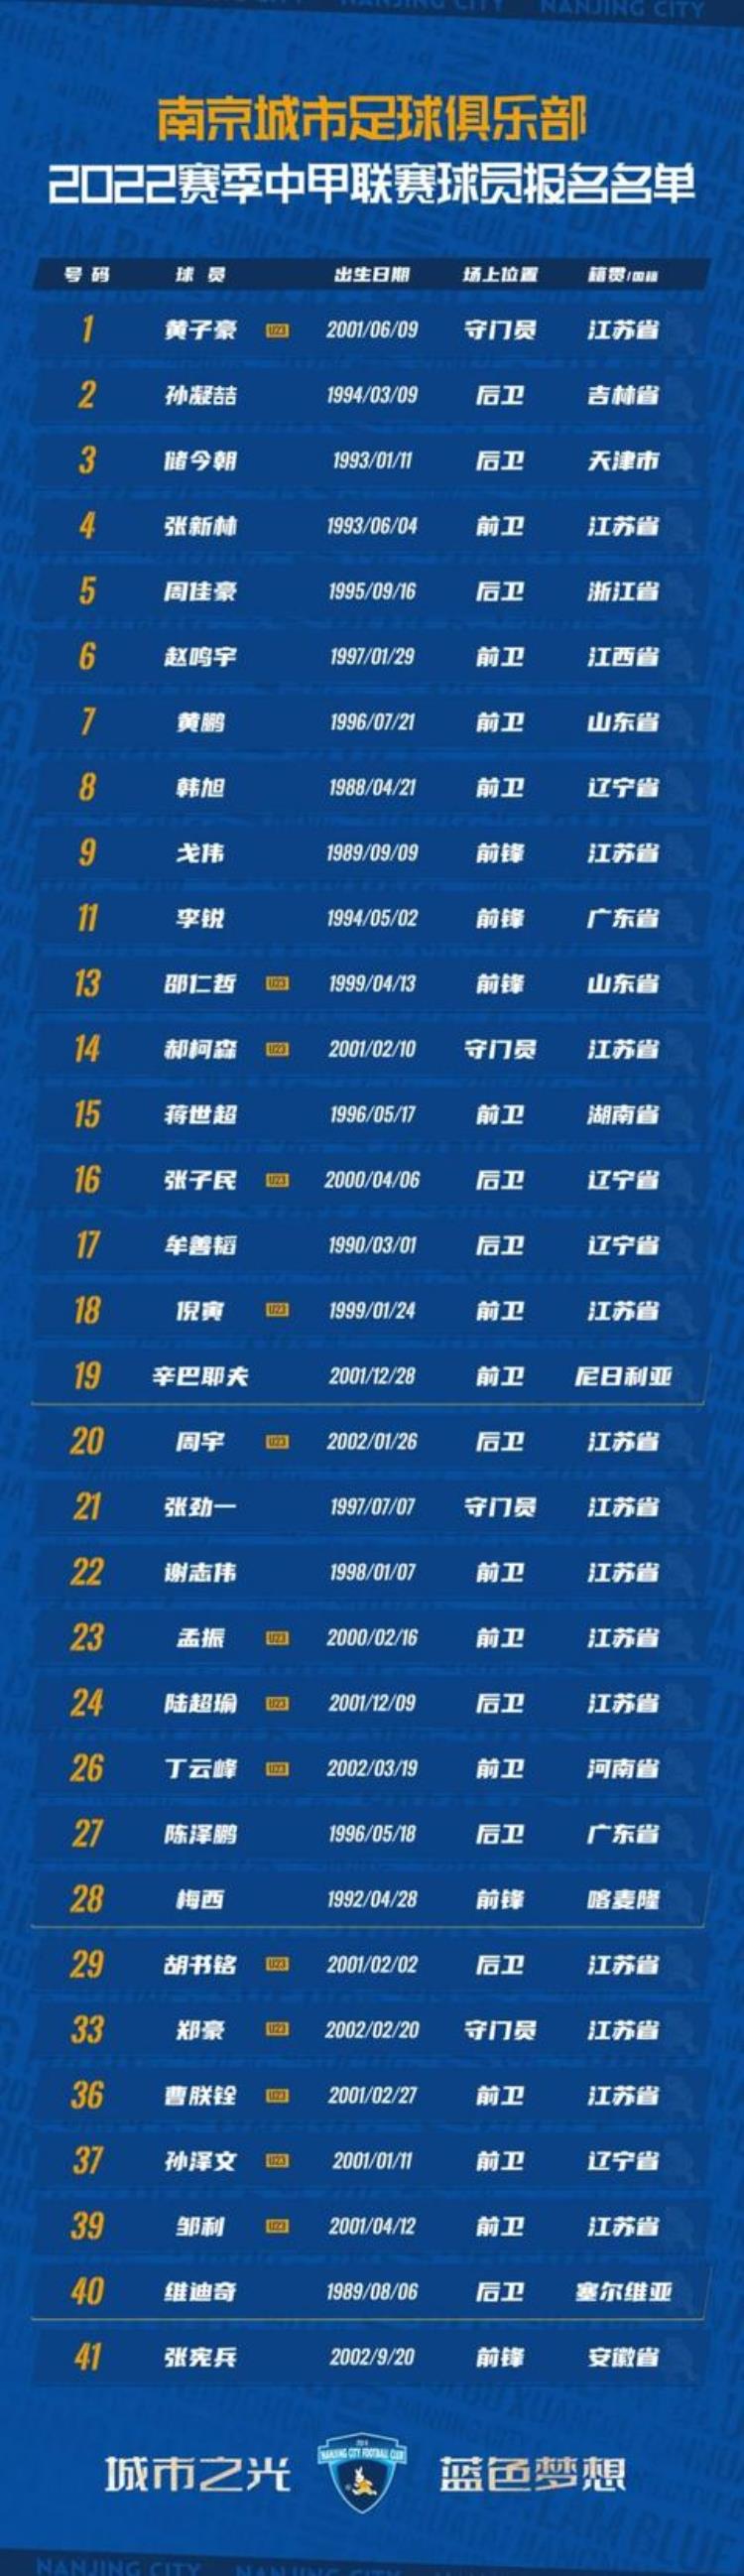 南京城市足球队球员名单「中甲南京城市启用全新队徽公布新赛季球员名单」